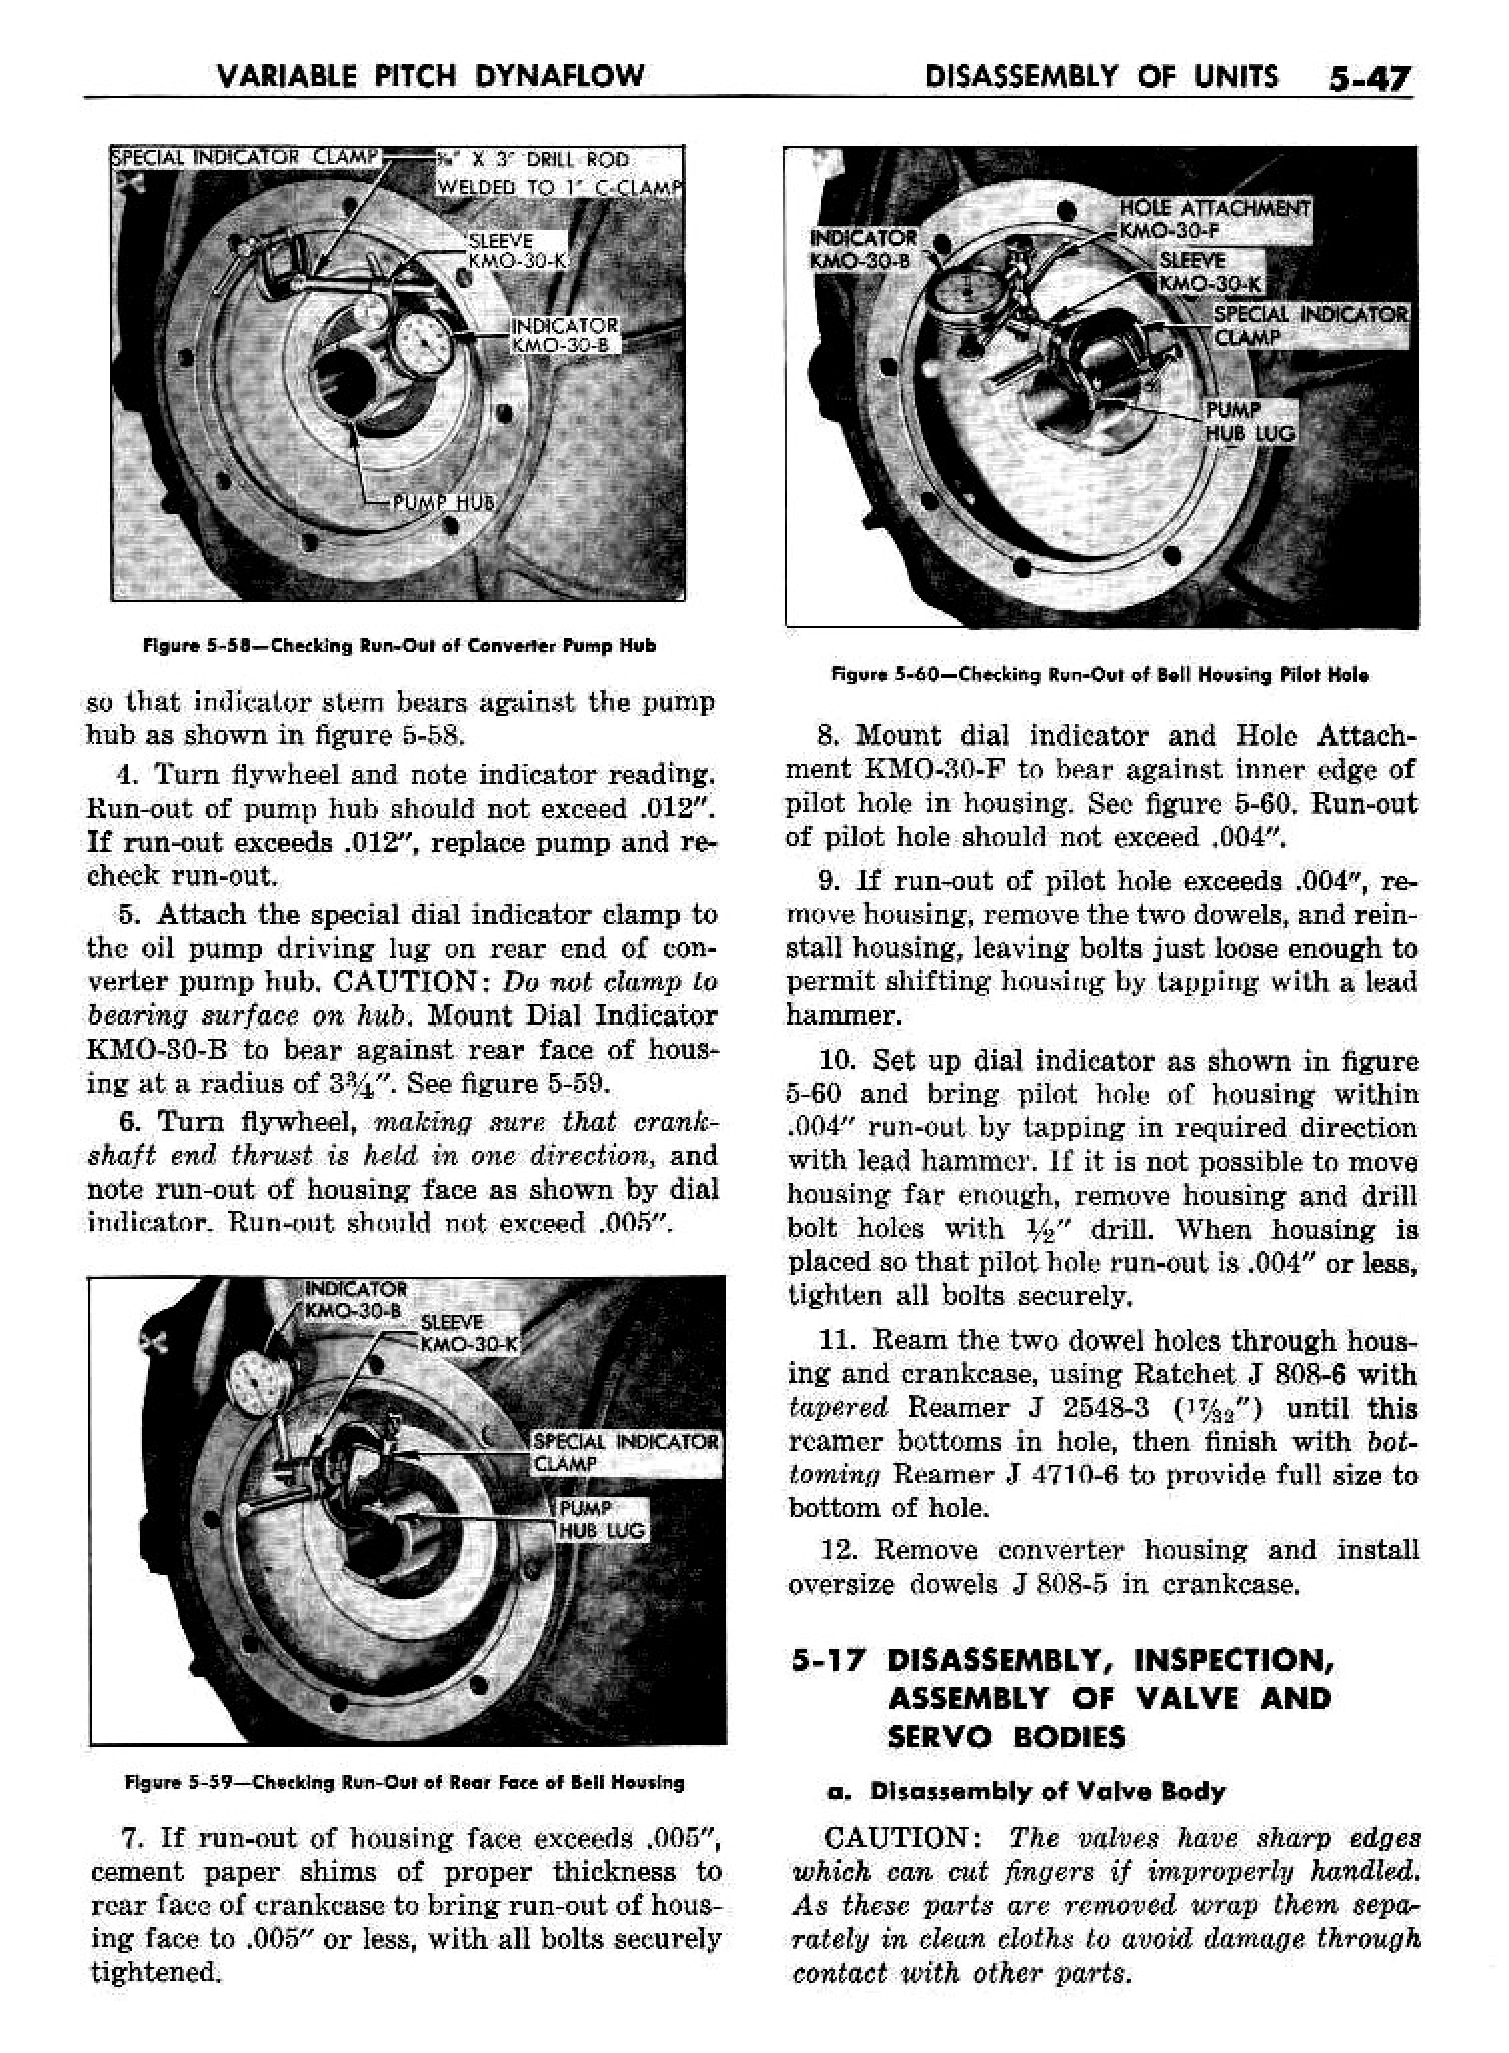 n_06 1958 Buick Shop Manual - Dynaflow_47.jpg